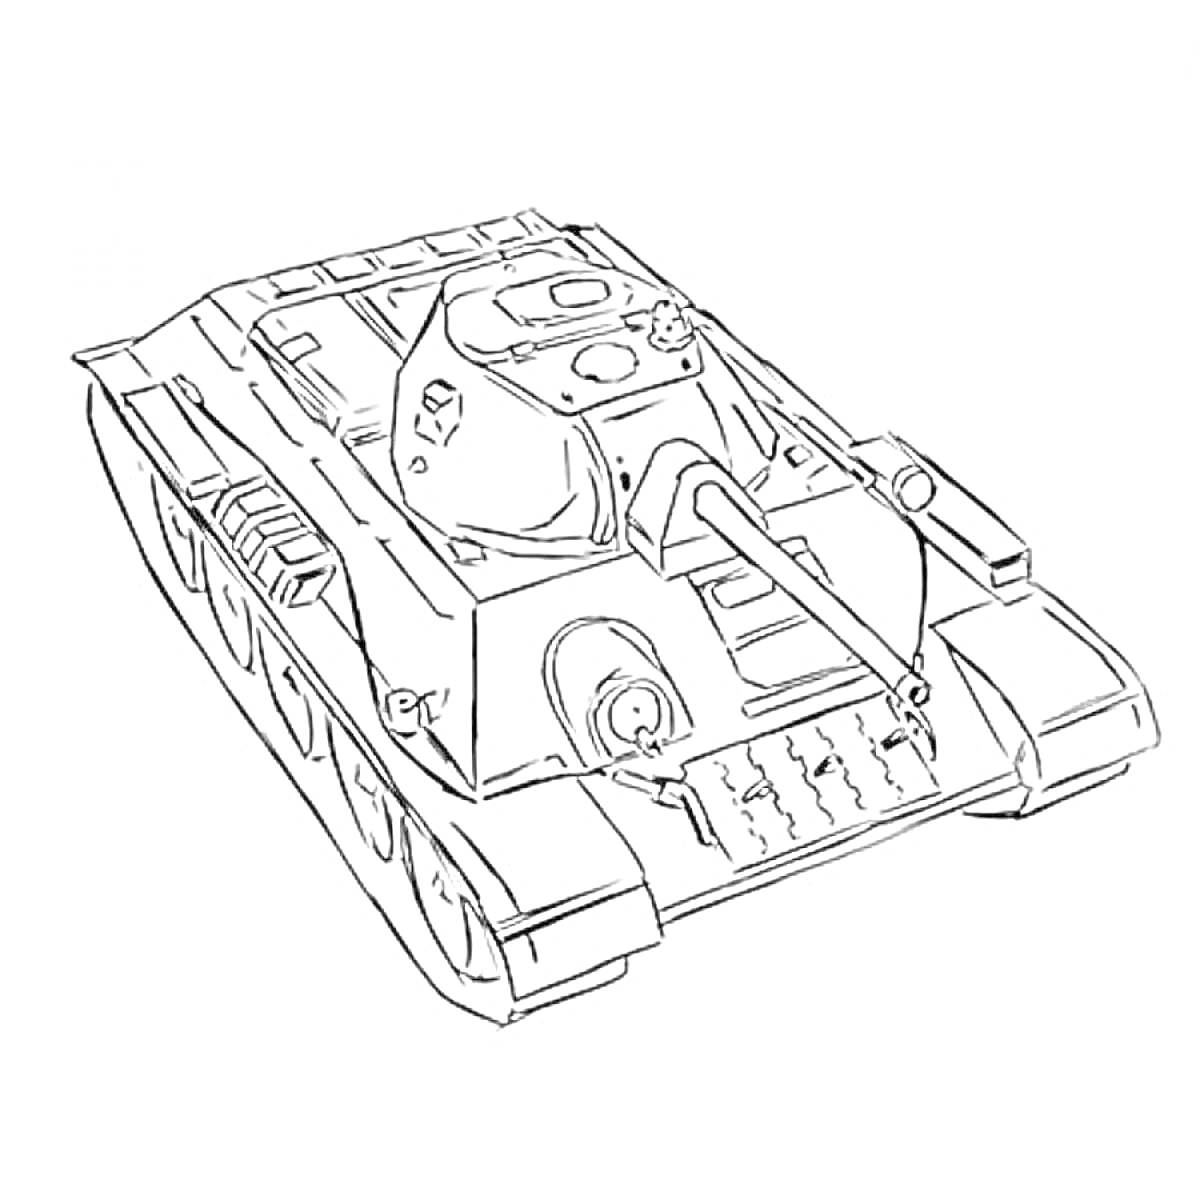 Раскраска Танковая раскраска Т-34 с каноном, люками и гусеницами